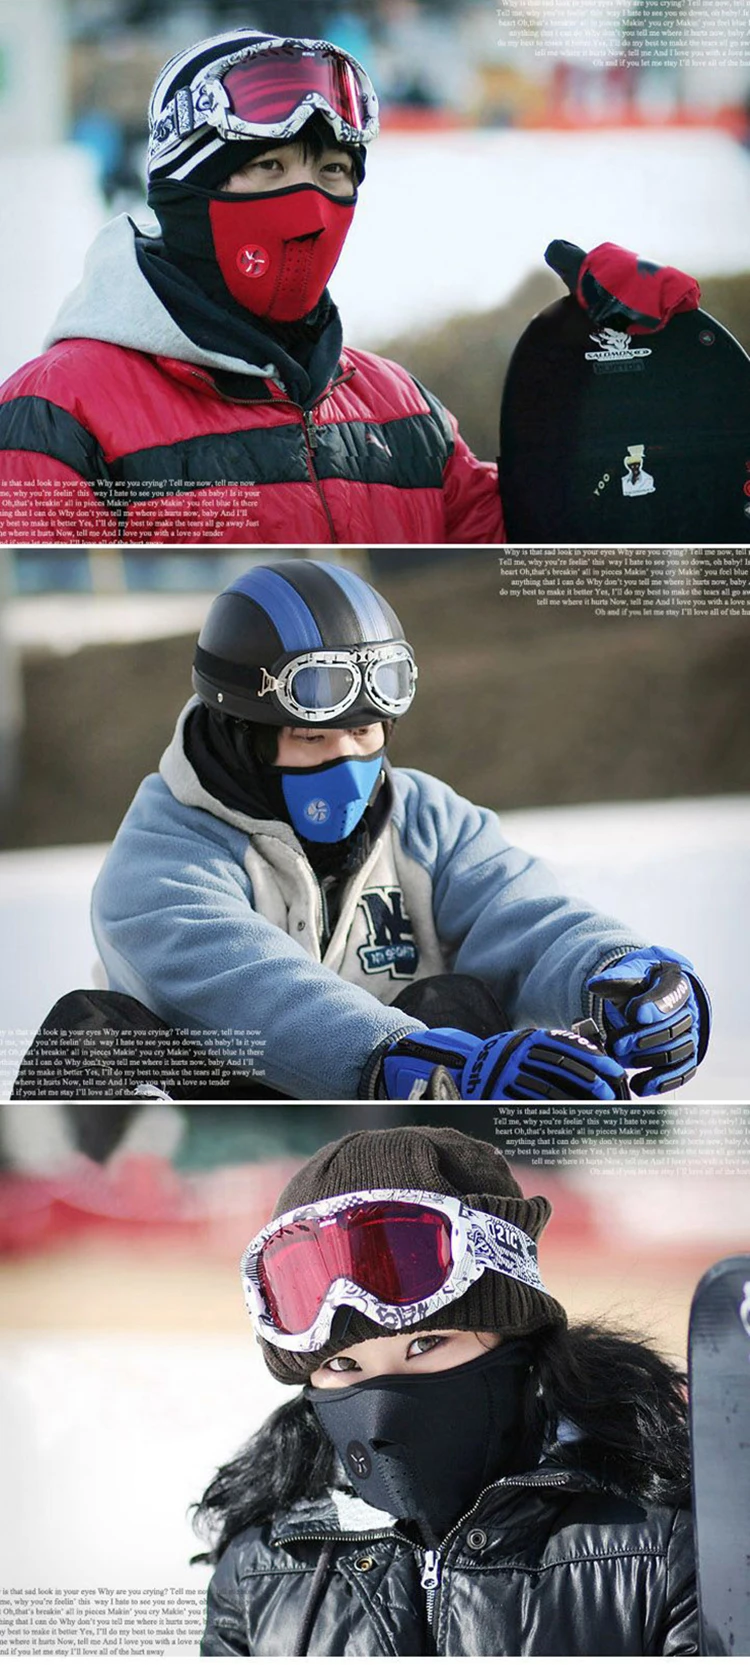 Ветрозащитный зимний Половина маска для лица смога/пыли Термальность флис водонипроницаемый клад Airsoft лыжный для верховой езды Бег теплая спортивная тренировочная маска для мужчин